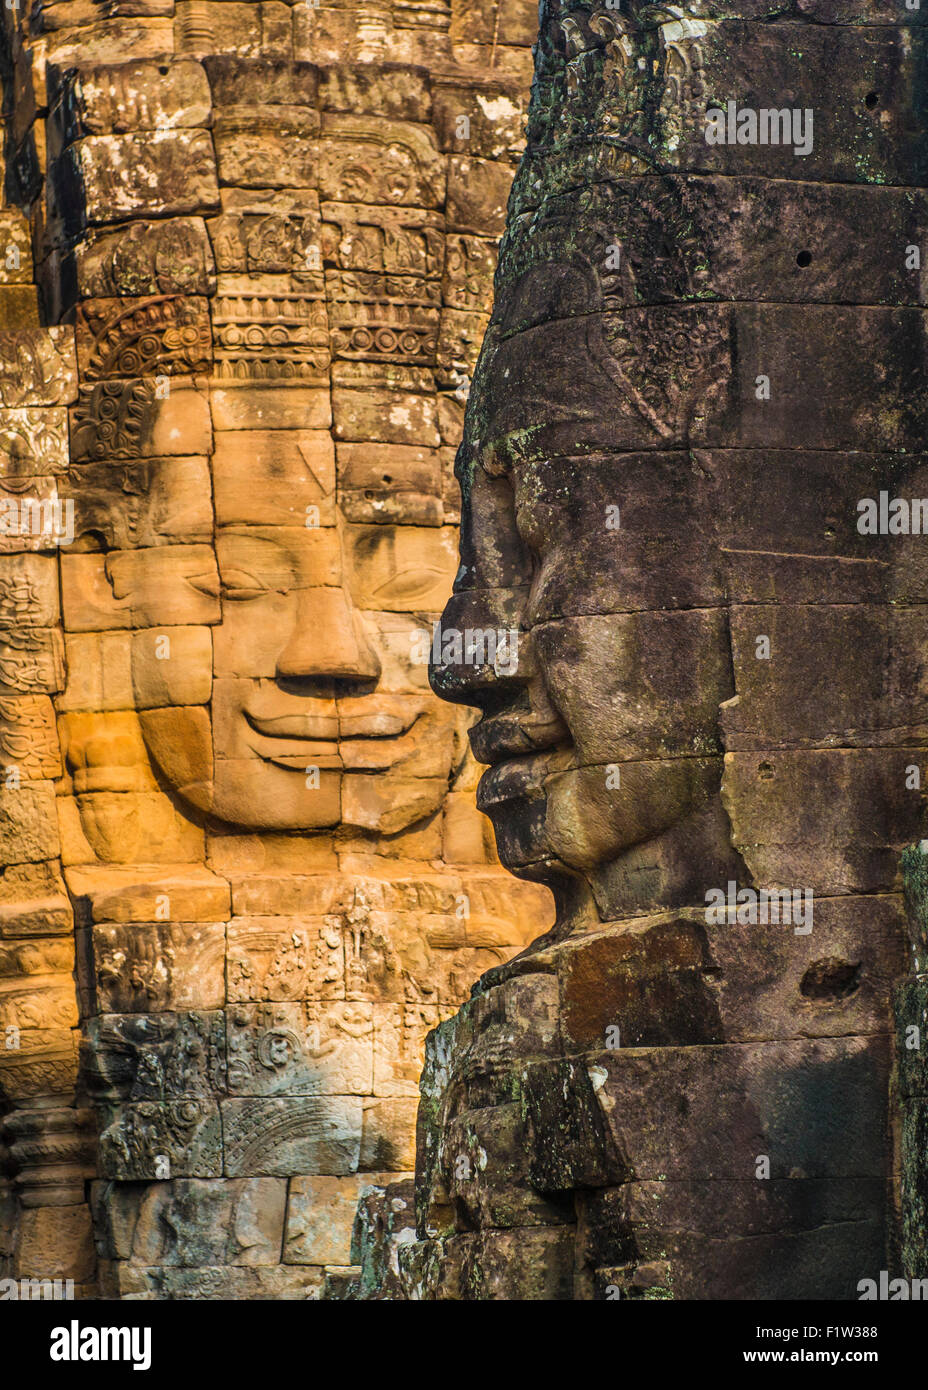 Gesichter geschnitzt in Stein am Bayon Tempel. Angkor Thom, Kambodscha. Stockfoto